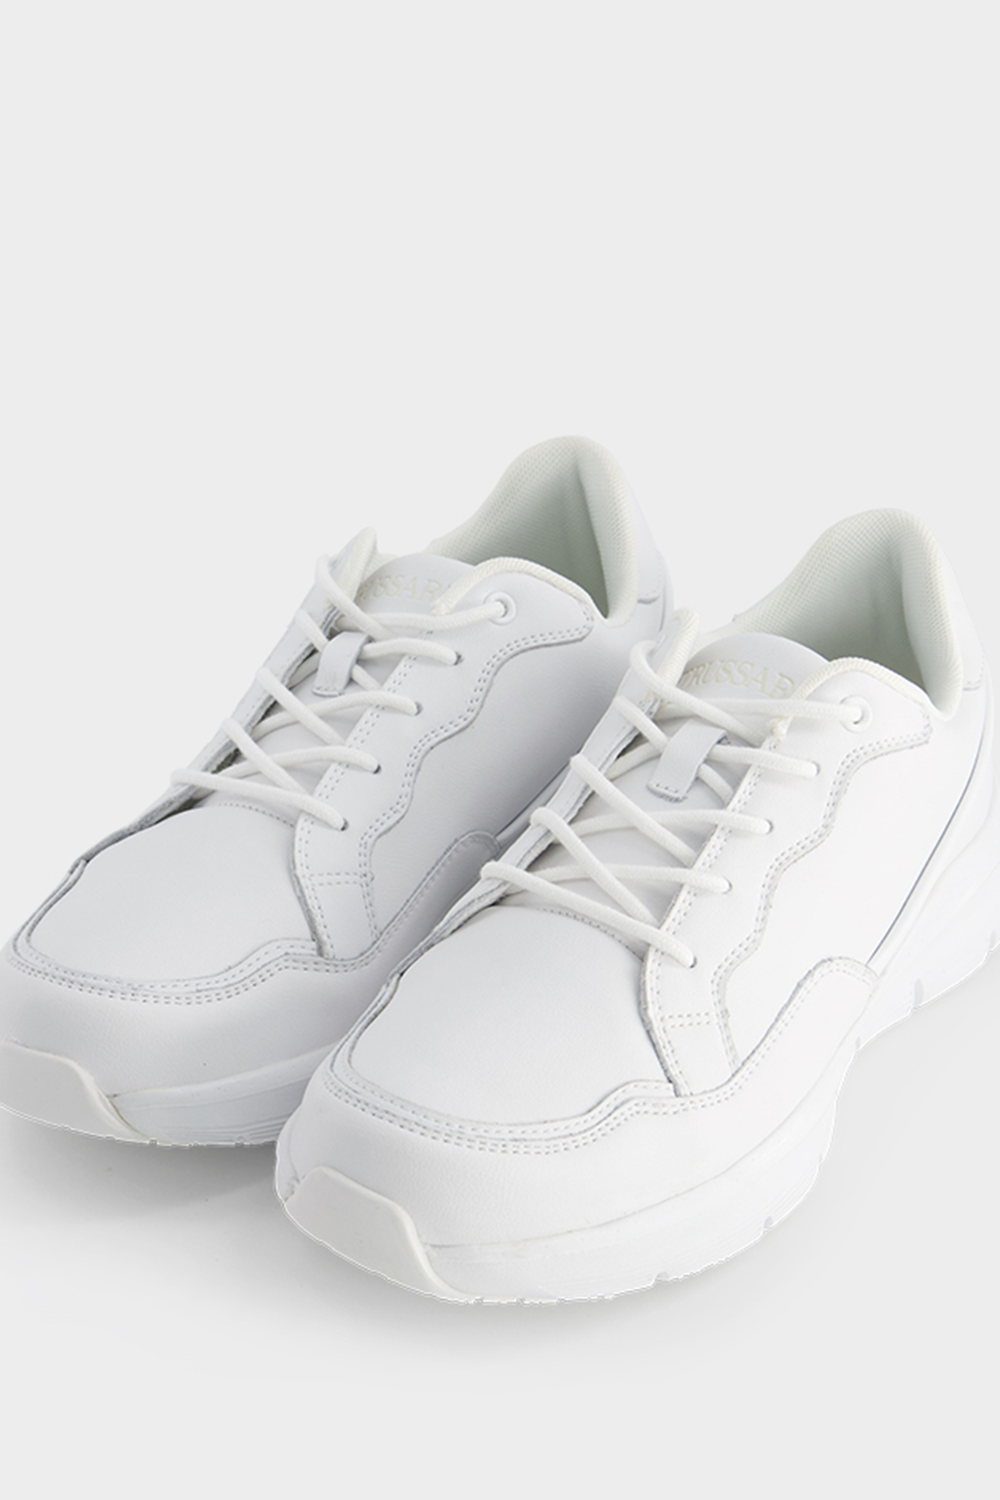 נעלי סניקרס לגברים בצבע לבן